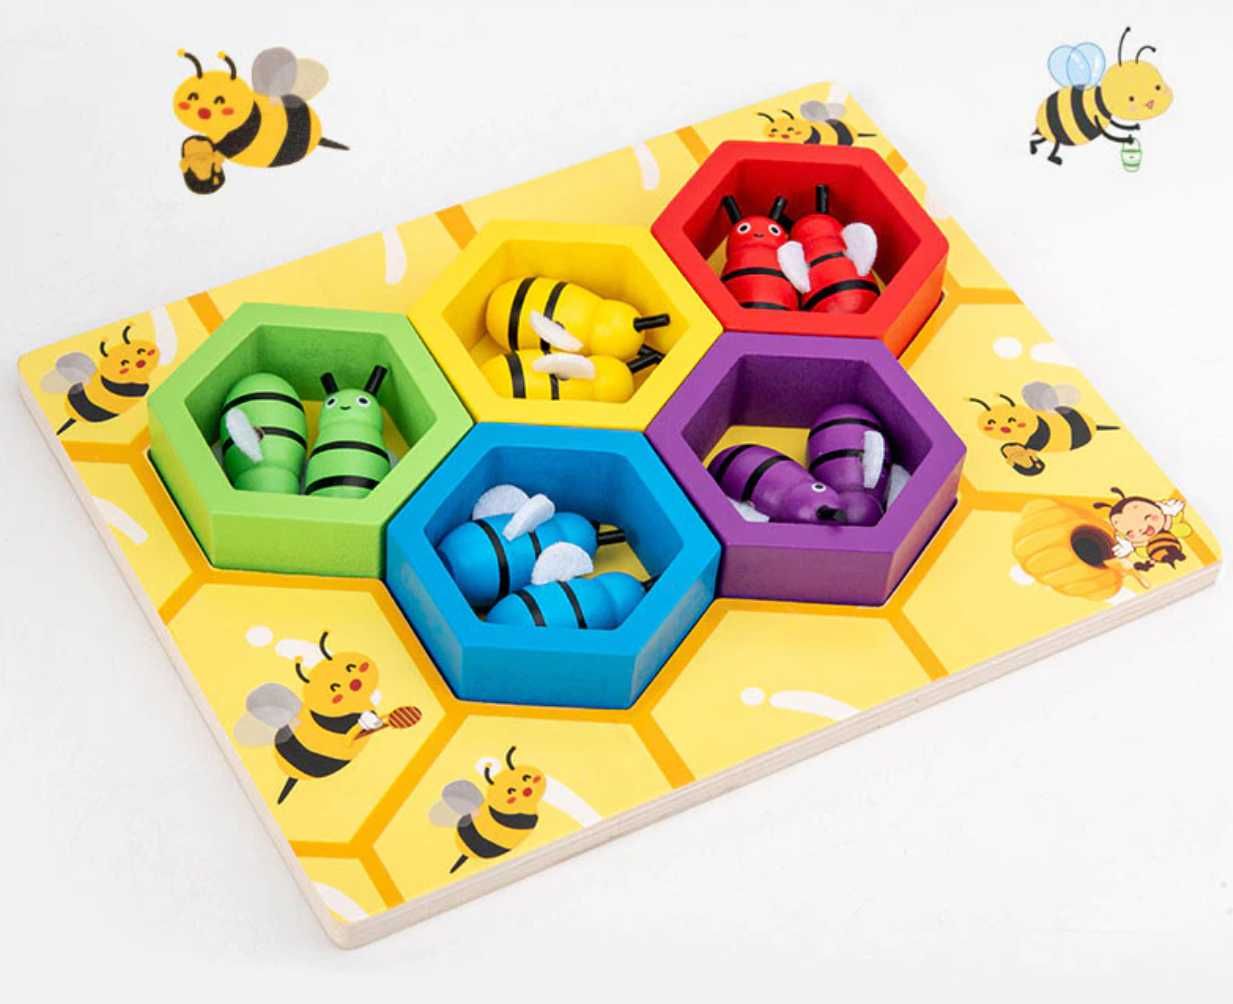 ТОП! Нов модел дървена игра - кошер с пчелички и хексагони от дърво